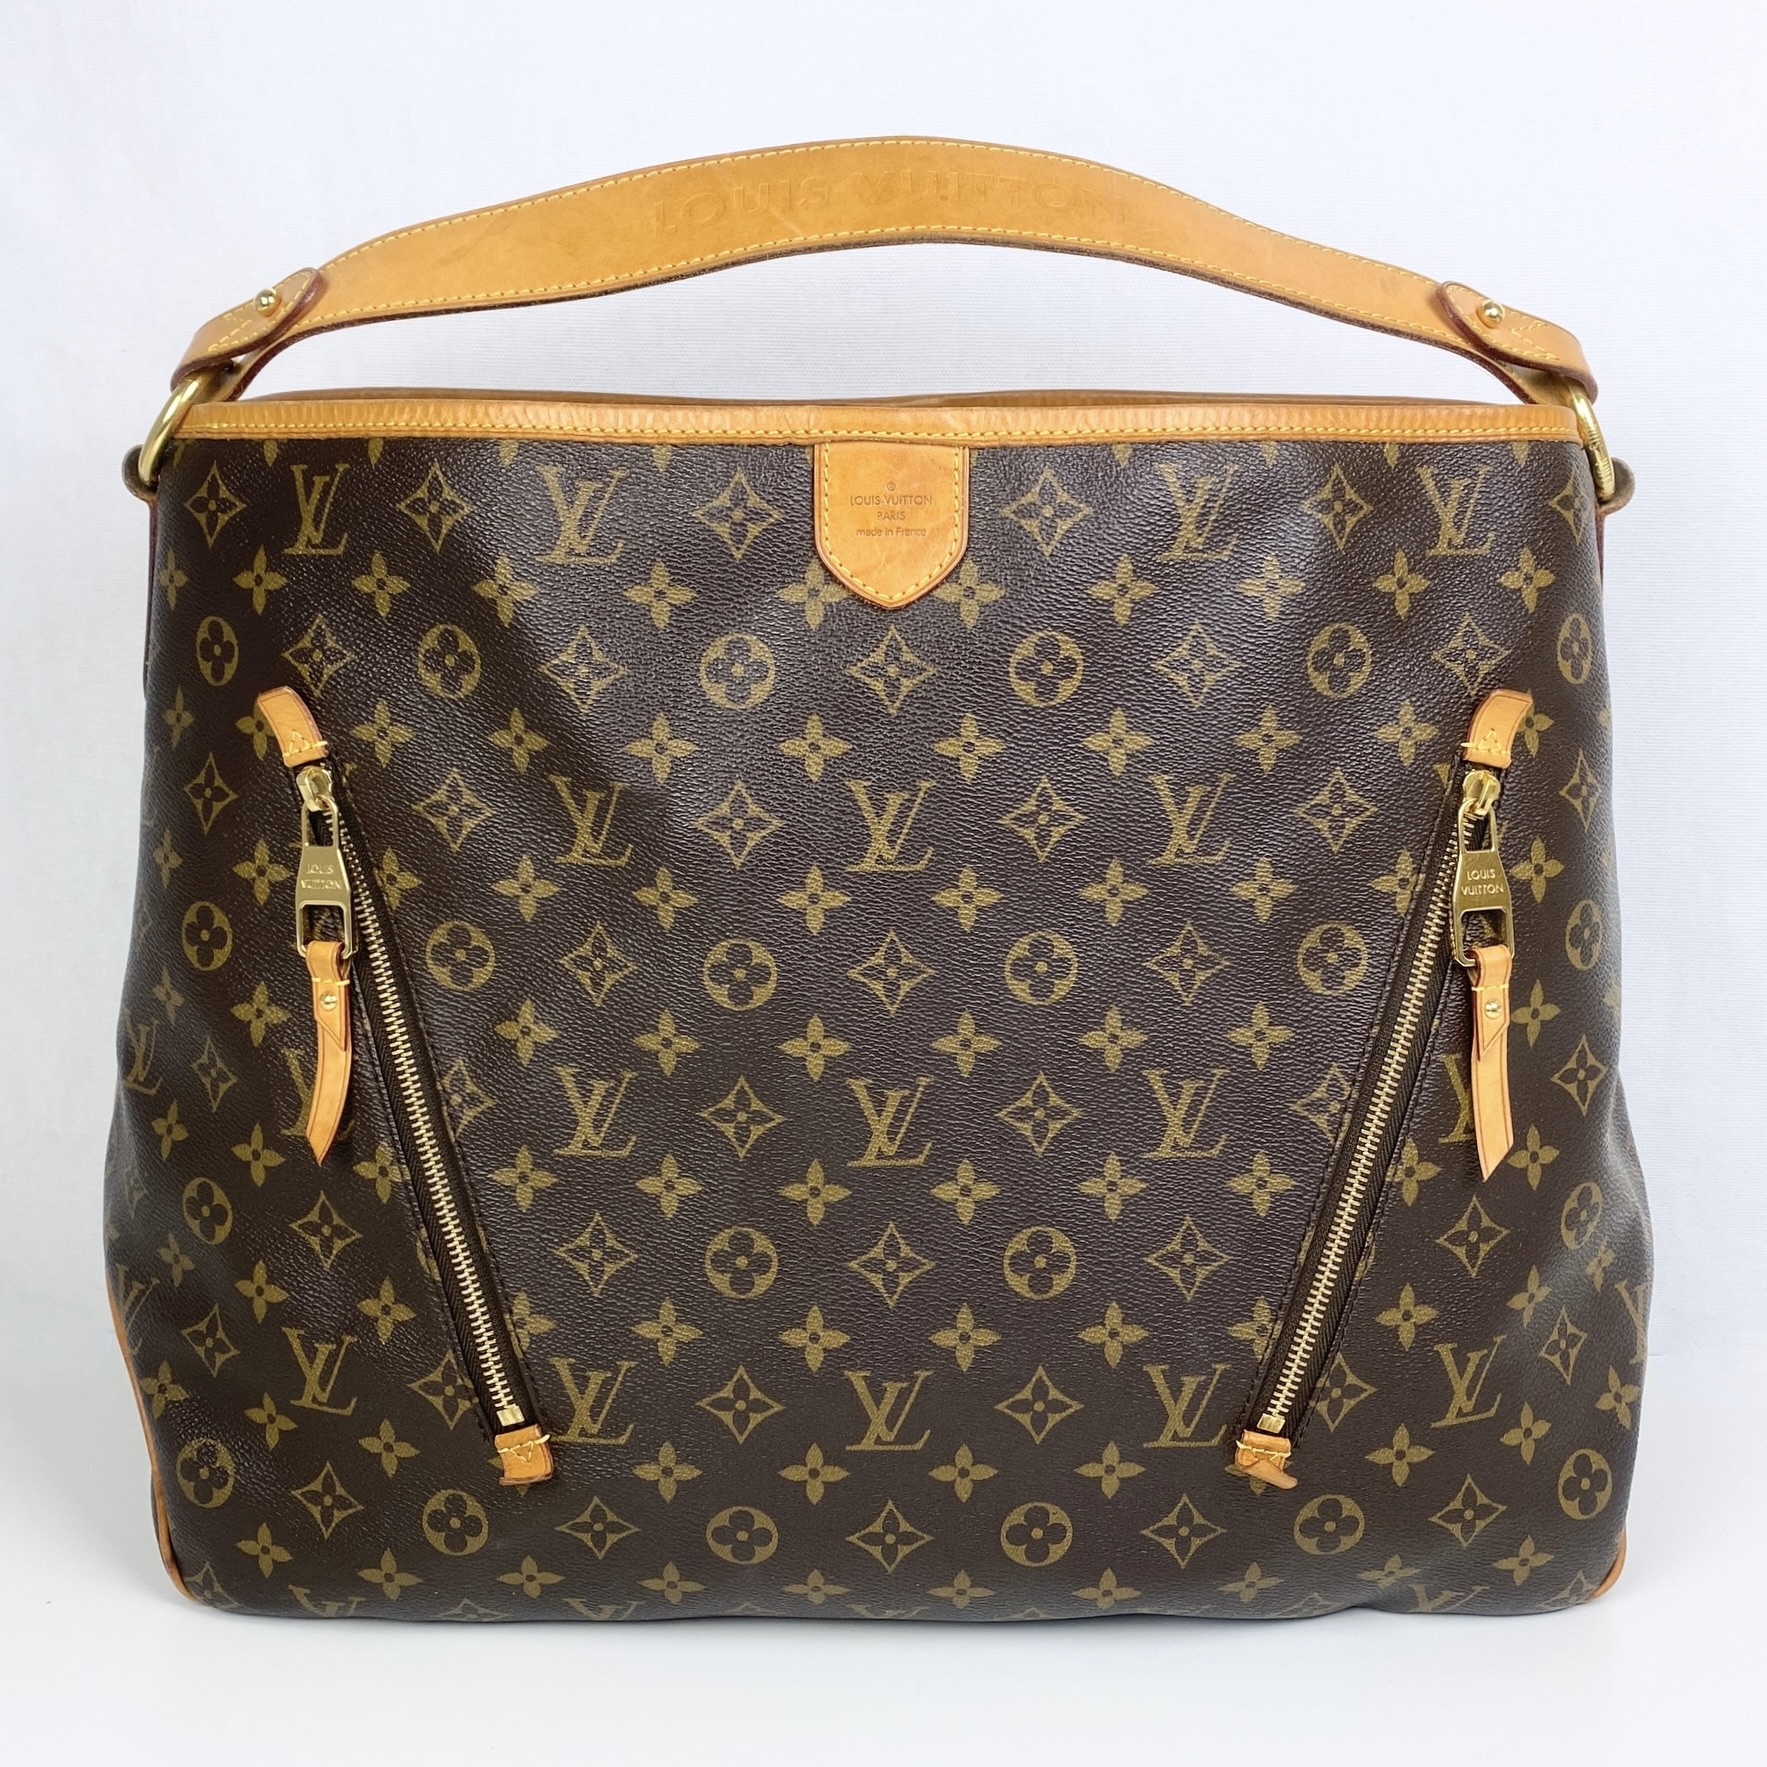 Louis Vuitton, Bags, Discontinued Louis Vuitton Delightful Pm